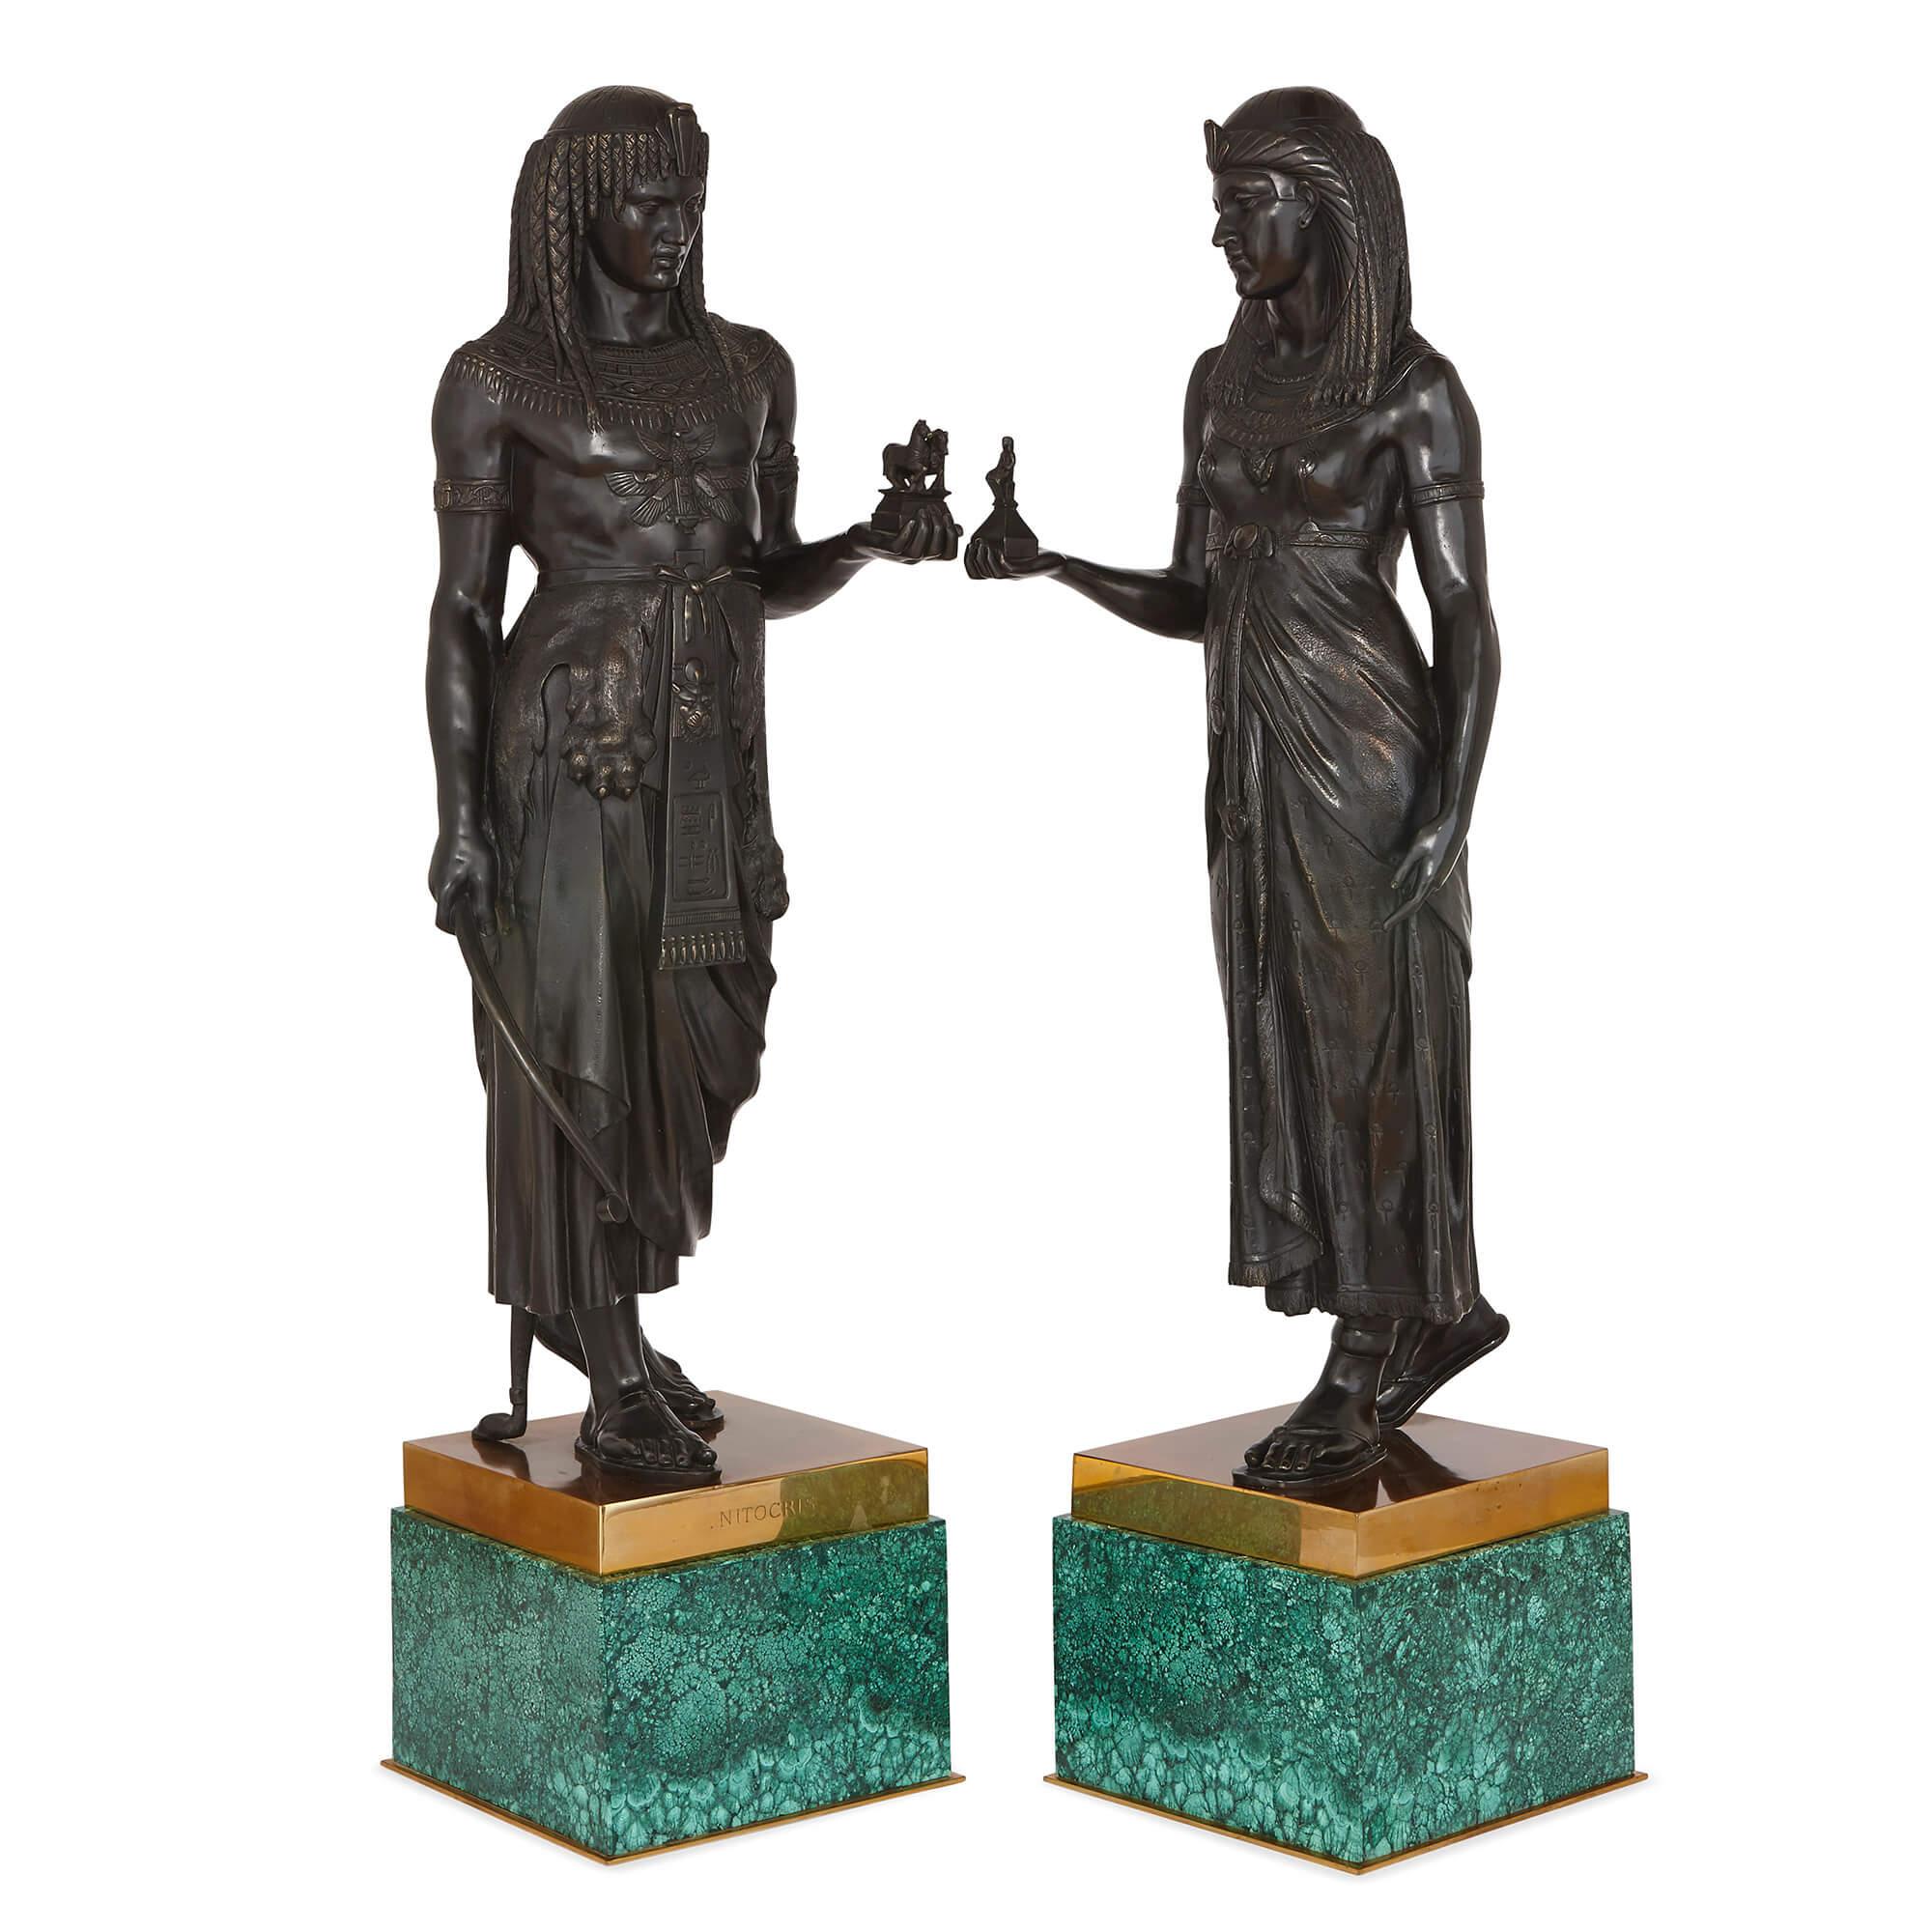 Les deux figures, un homme et une femme, sont coulées en bronze patiné, et sont stylisées comme des figures égyptiennes dans le style Empire de Napoléon Ier. Les sculptures sont placées sur des socles de forme carrée en bronze doré, eux-mêmes montés